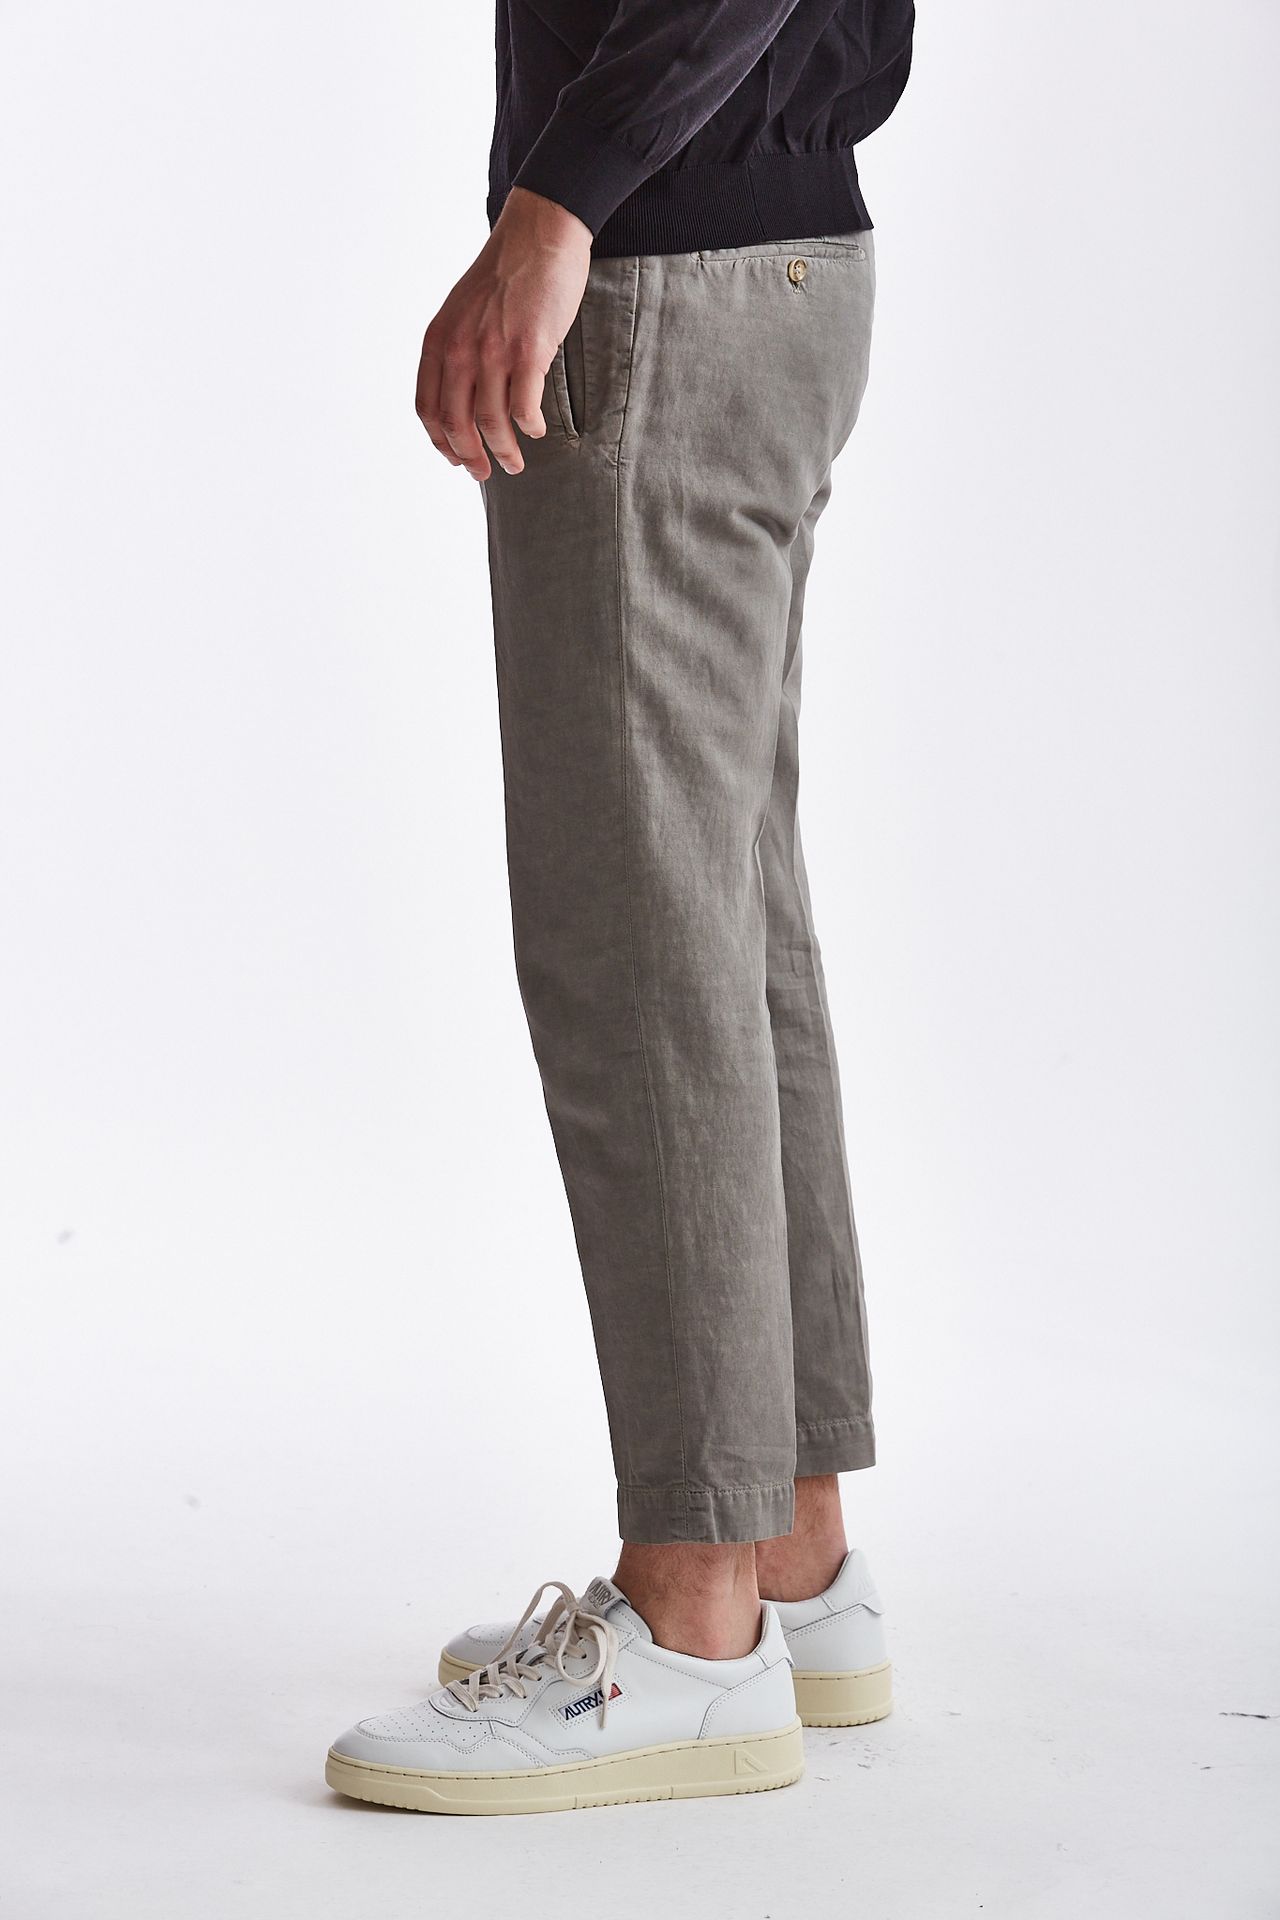 Pantalone lino/cotone grigio